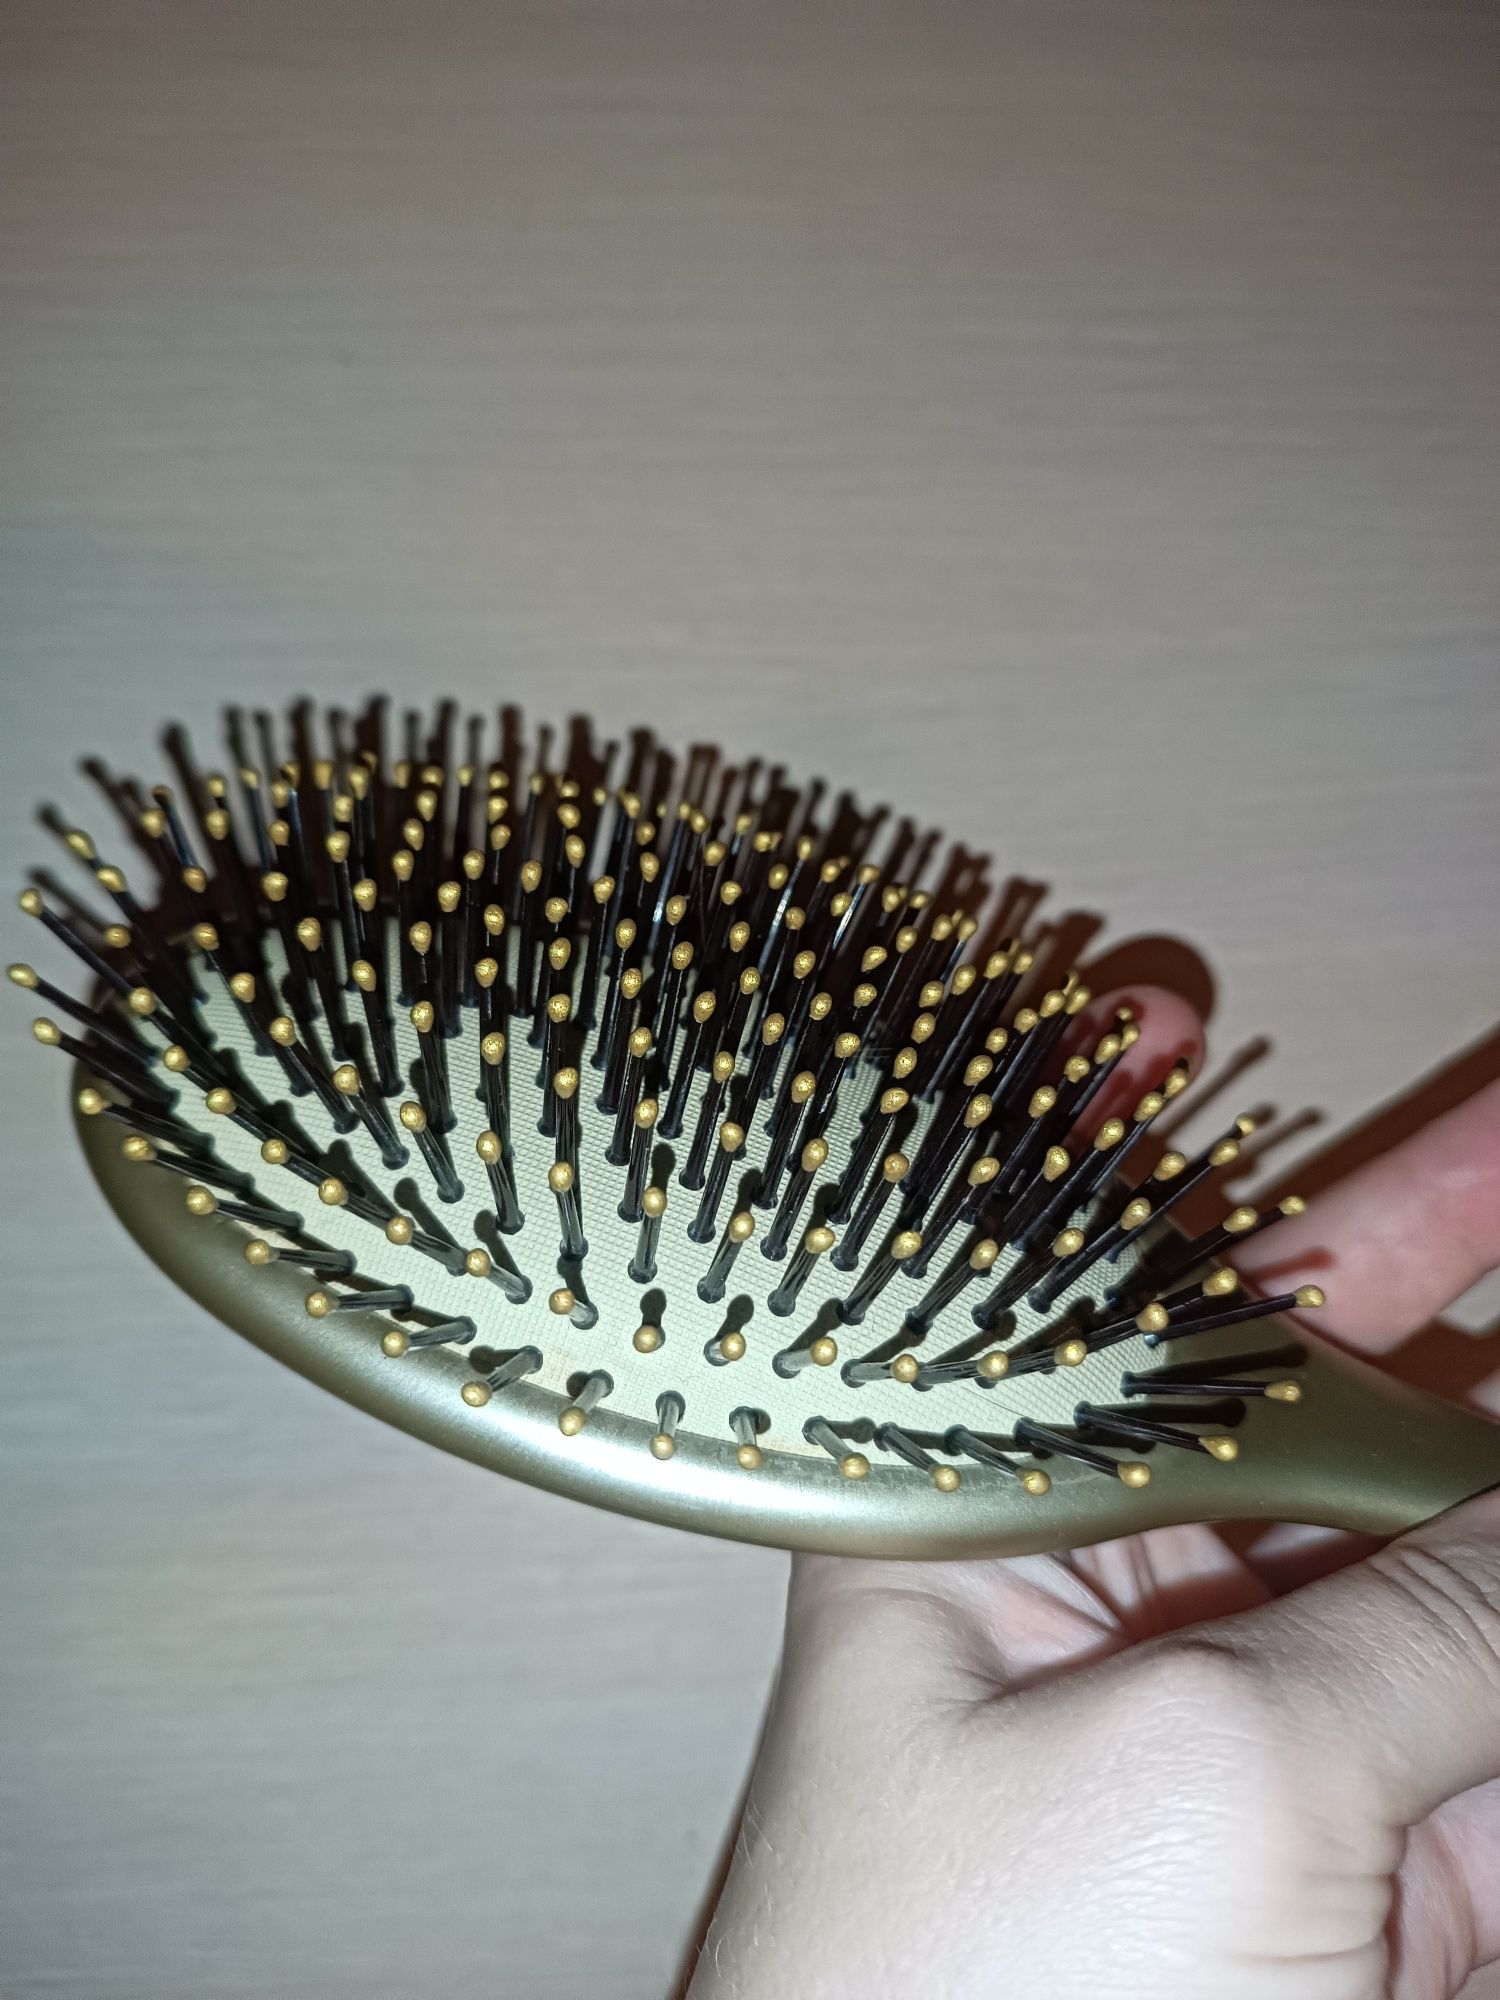 Массажная щётка для волос Salon professional gold